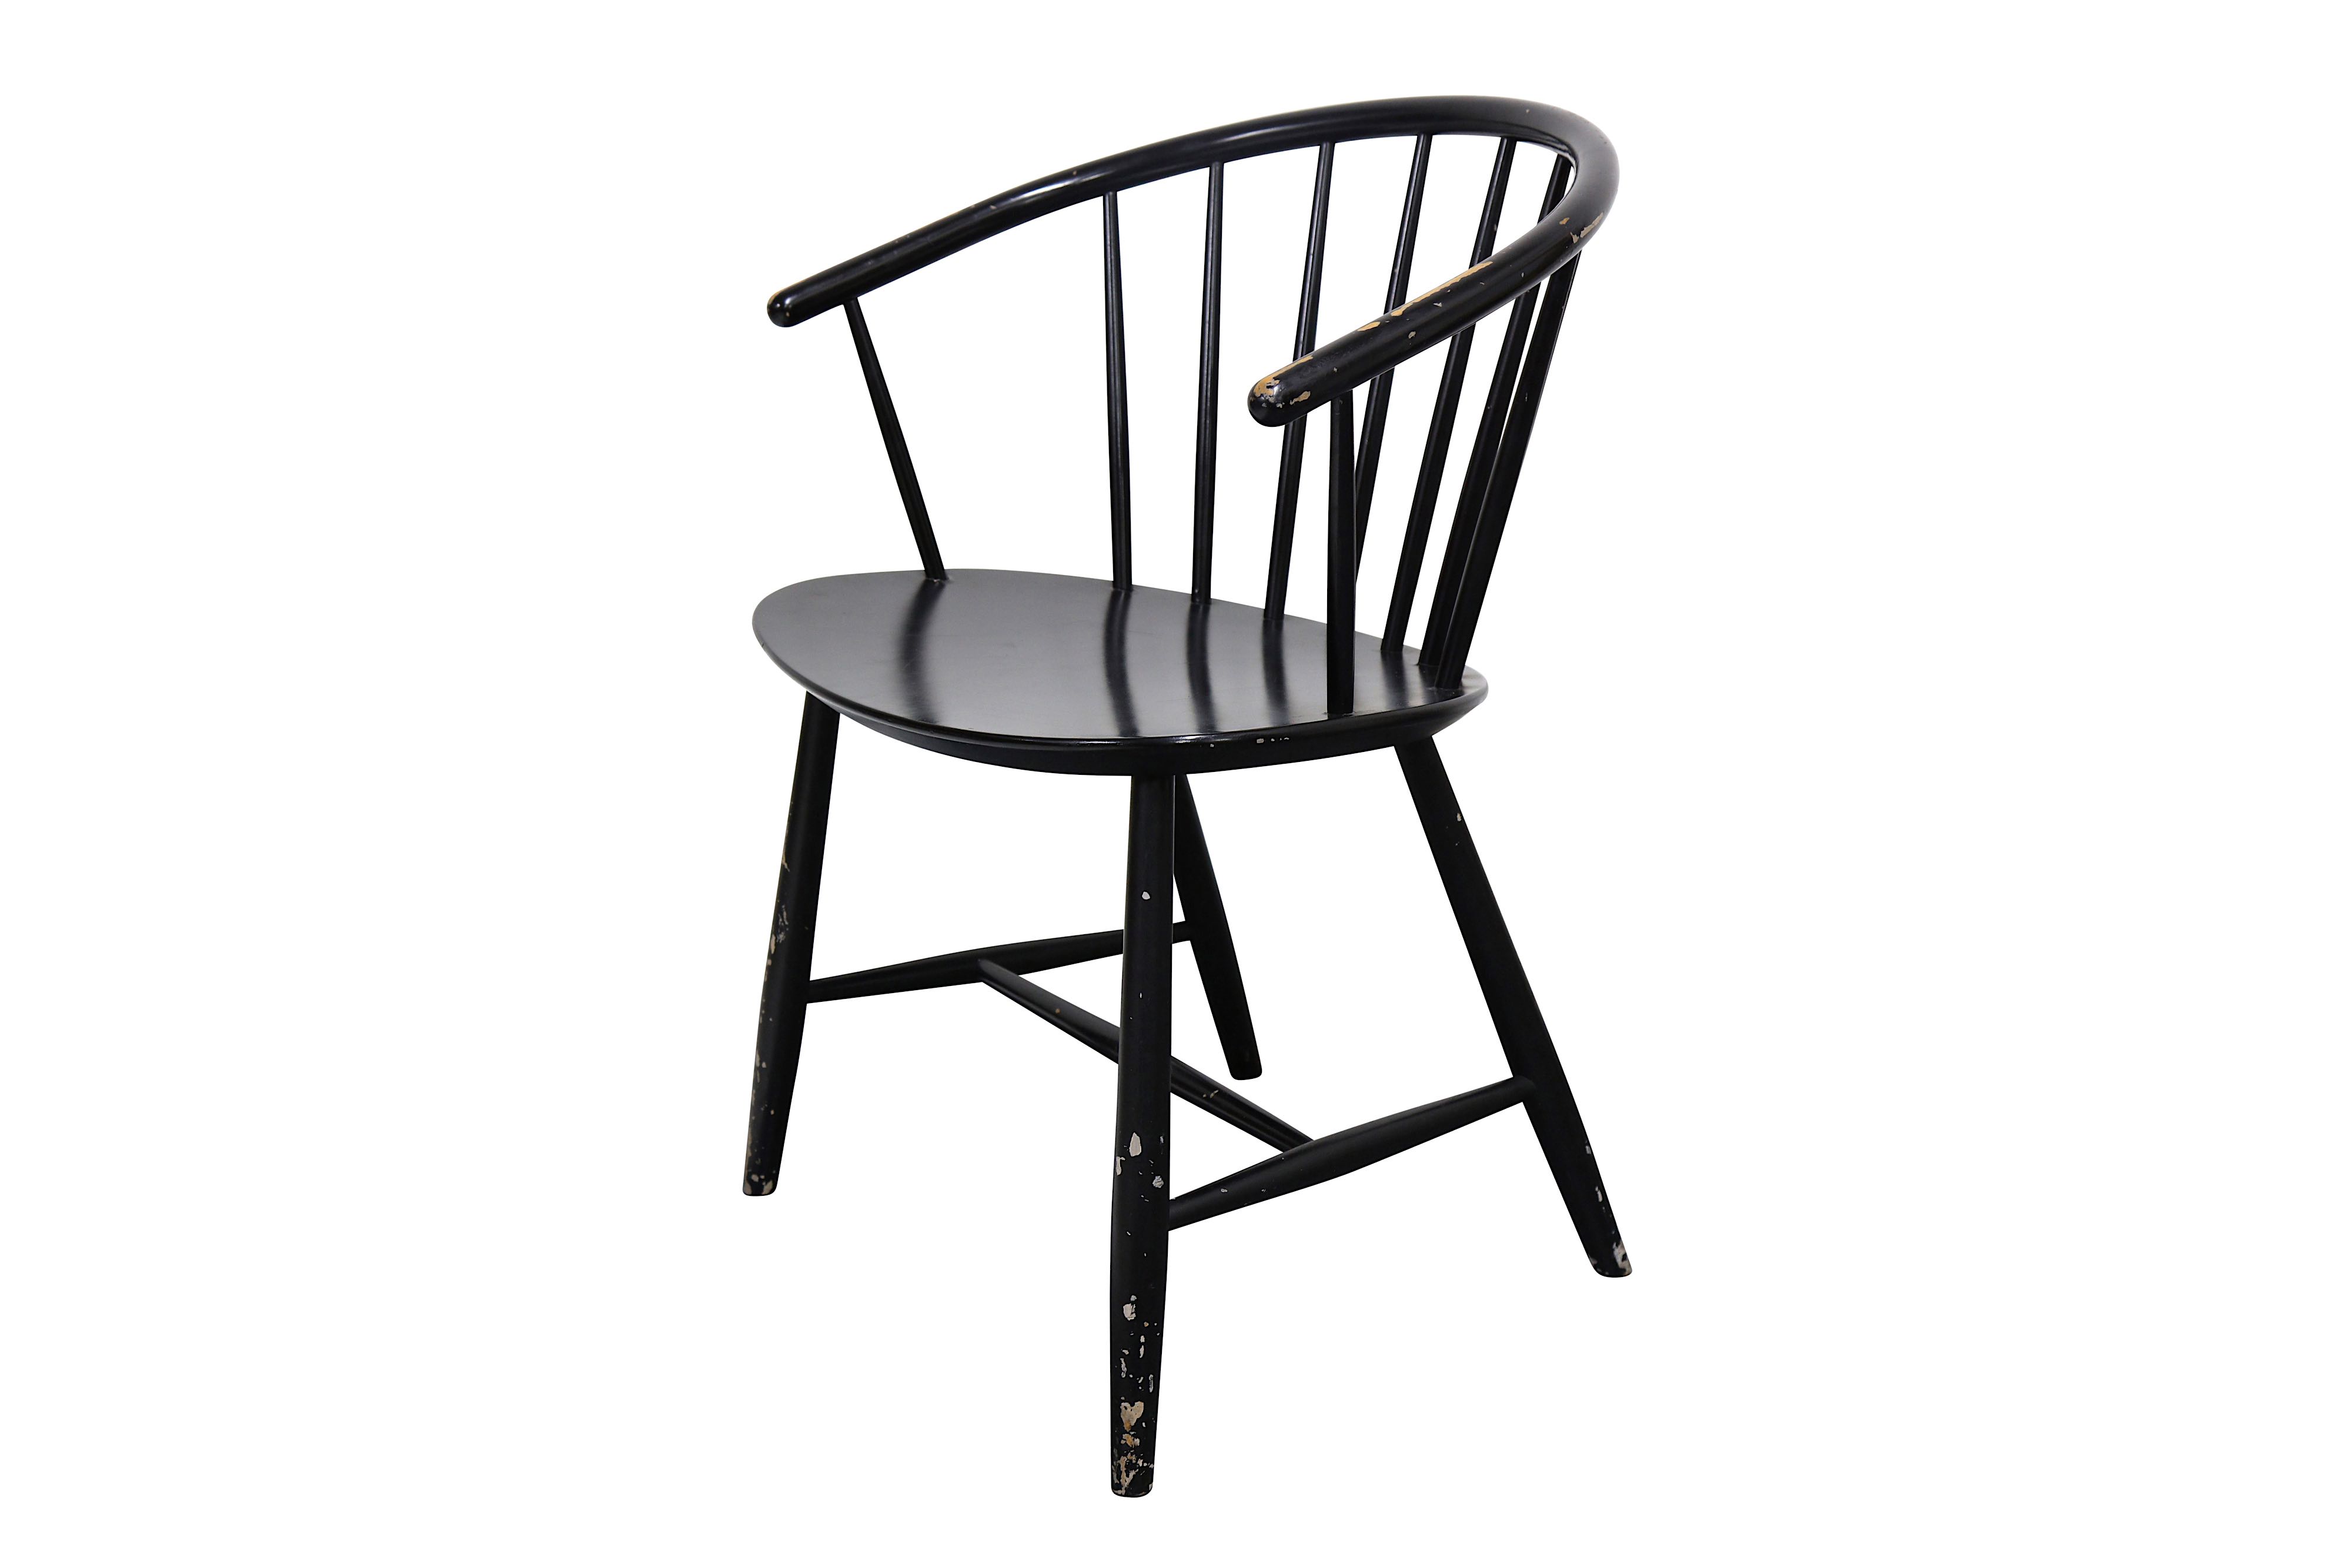 EJVIND JOHANSSON: A Primitive Chair, JG4, designed 1957